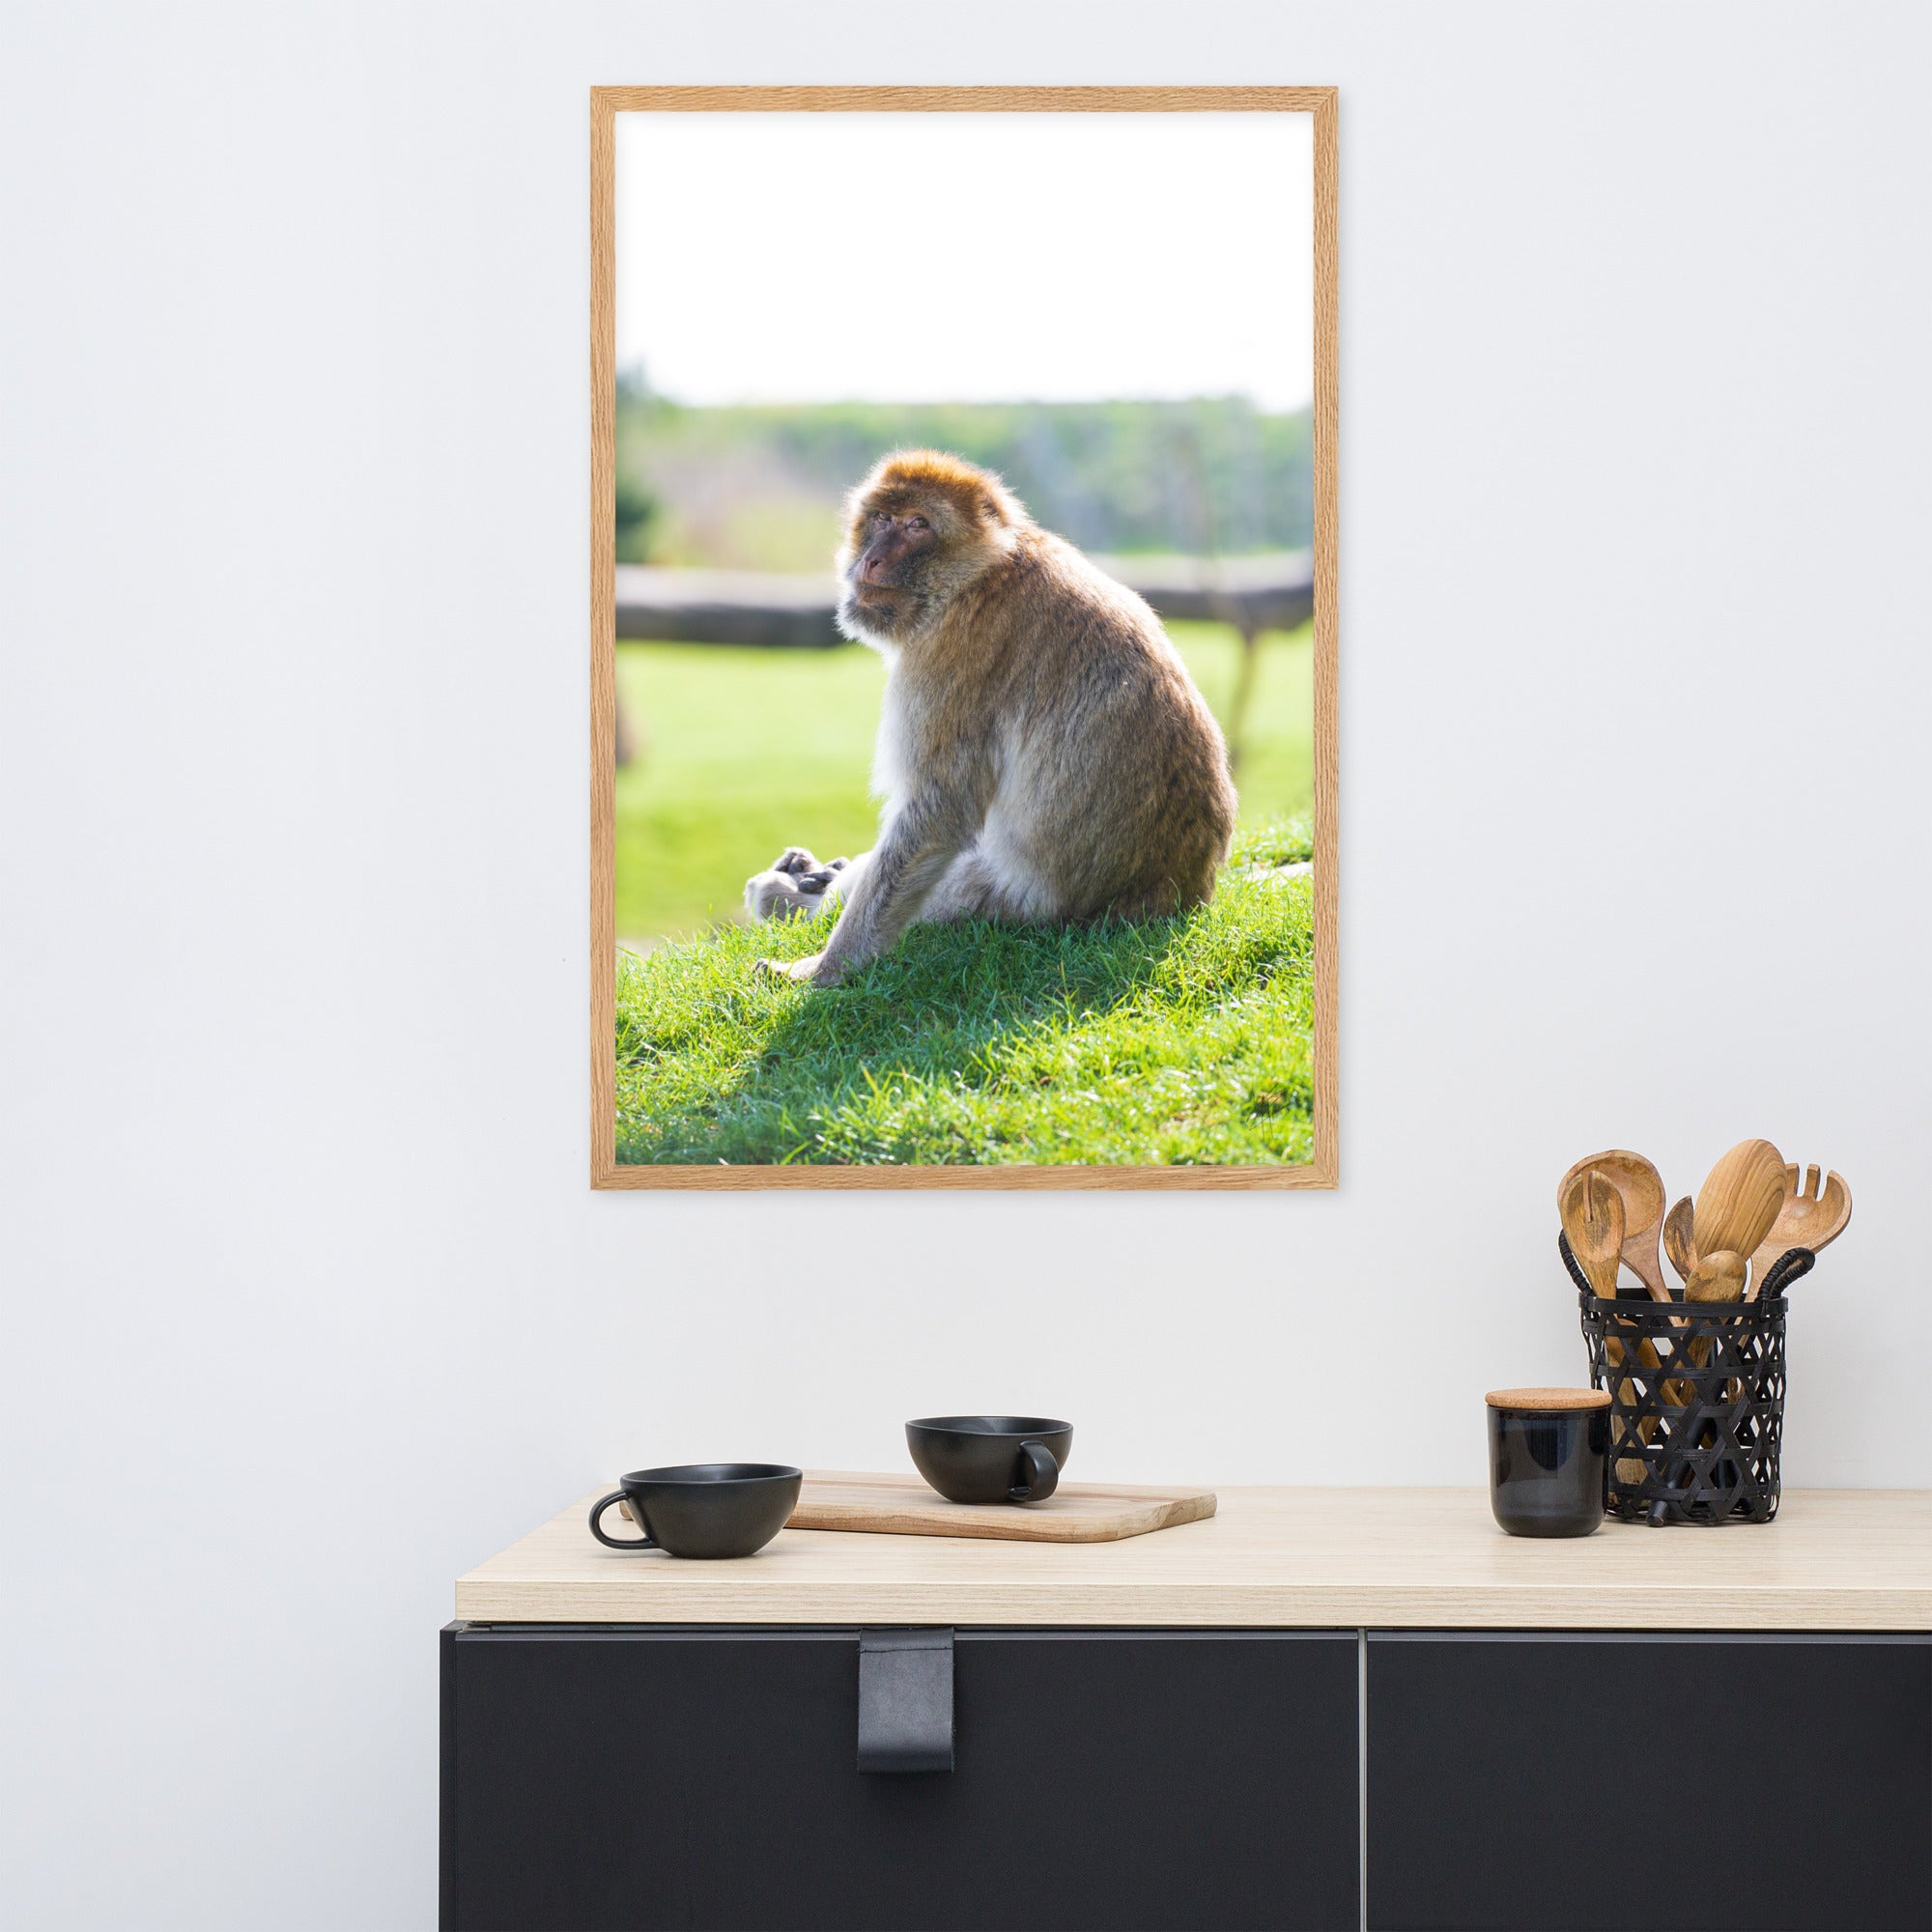 Dans le regard d'un macaque - Poster encadré - La boutique du poster Français